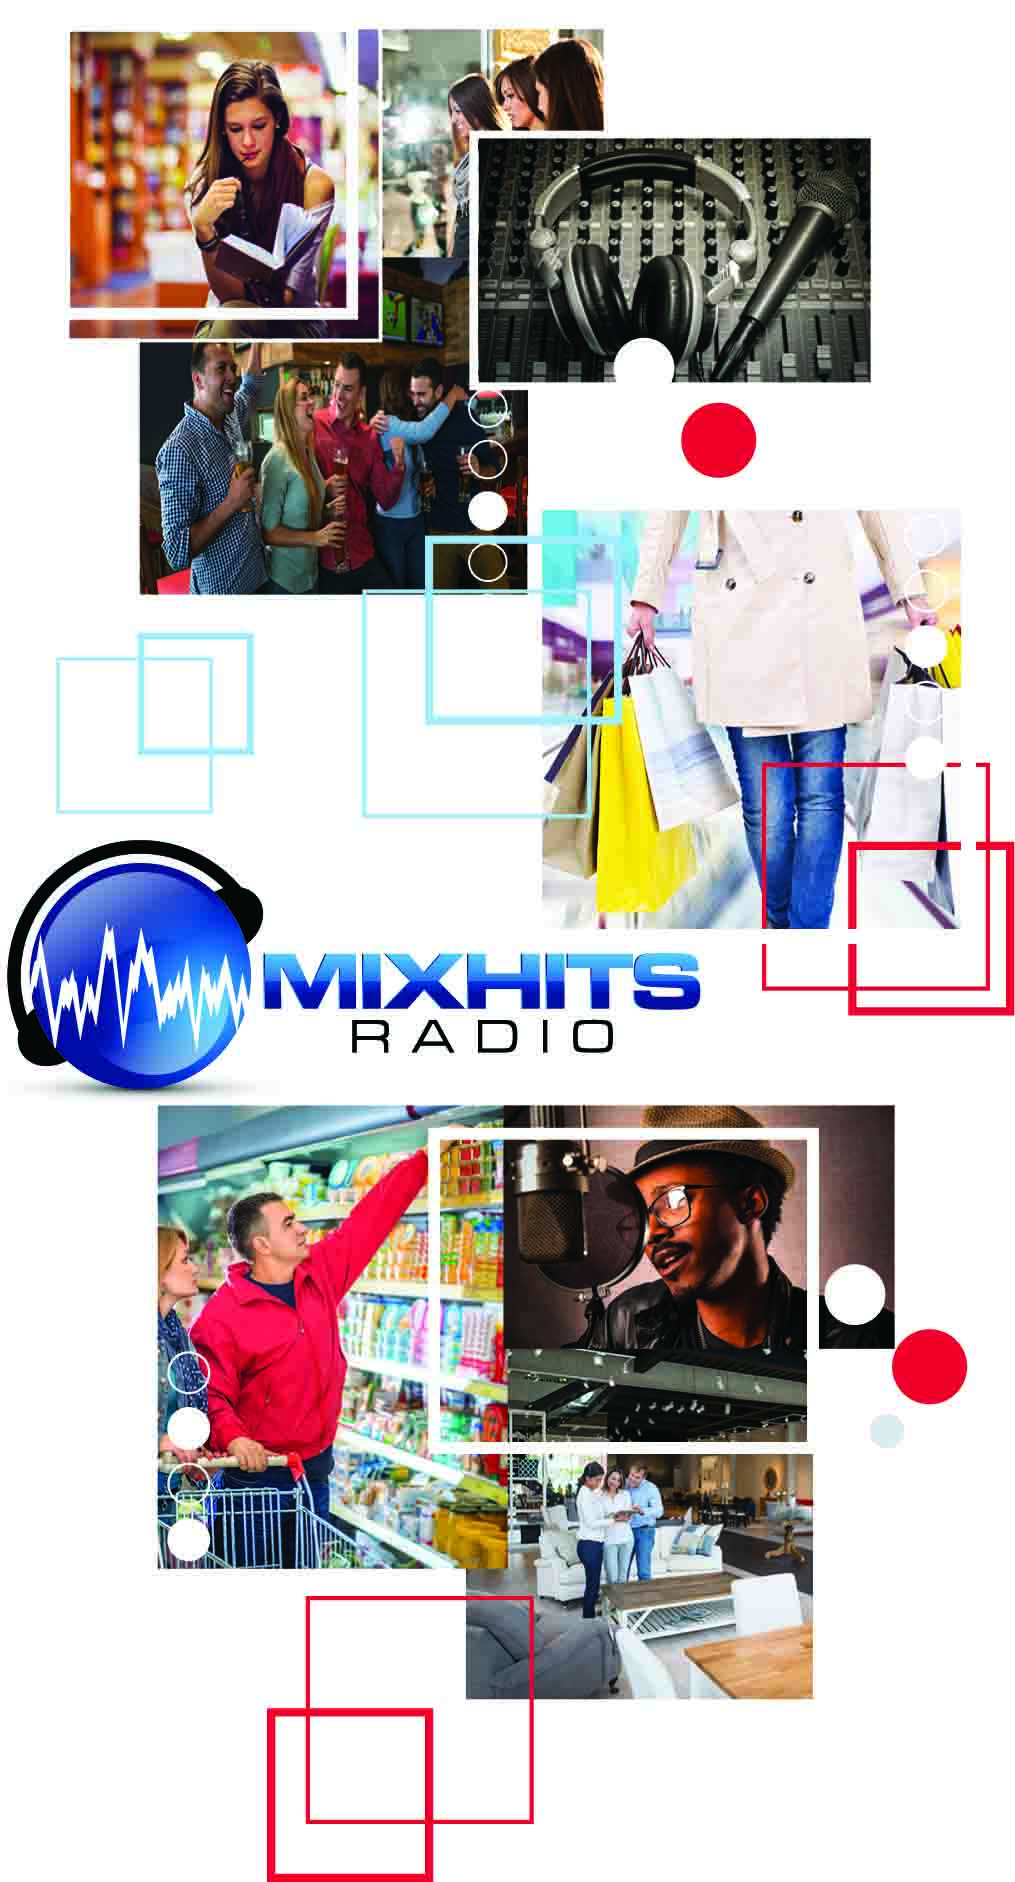 About MIXHITS Radio